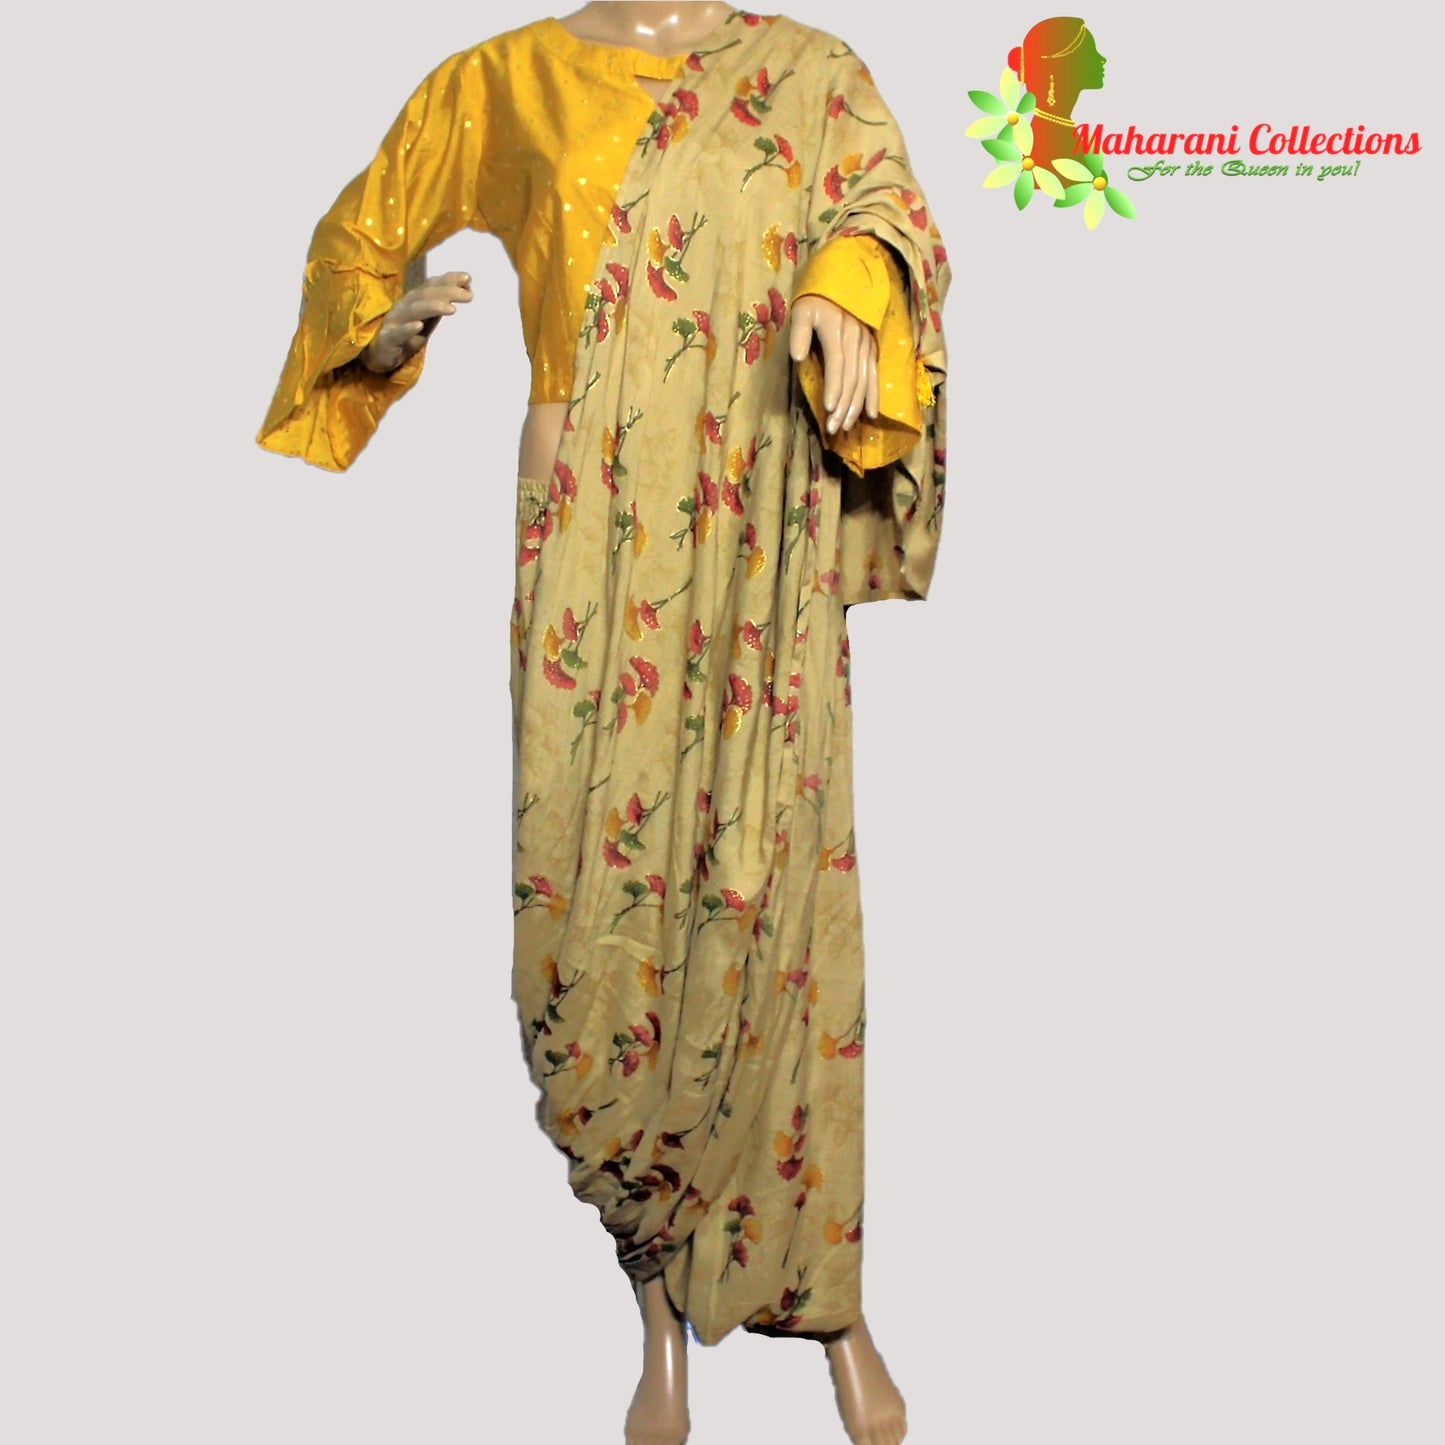 Maharani's Soft Cotton Stitched Dhoti-Top - Mustard Yellow (L)